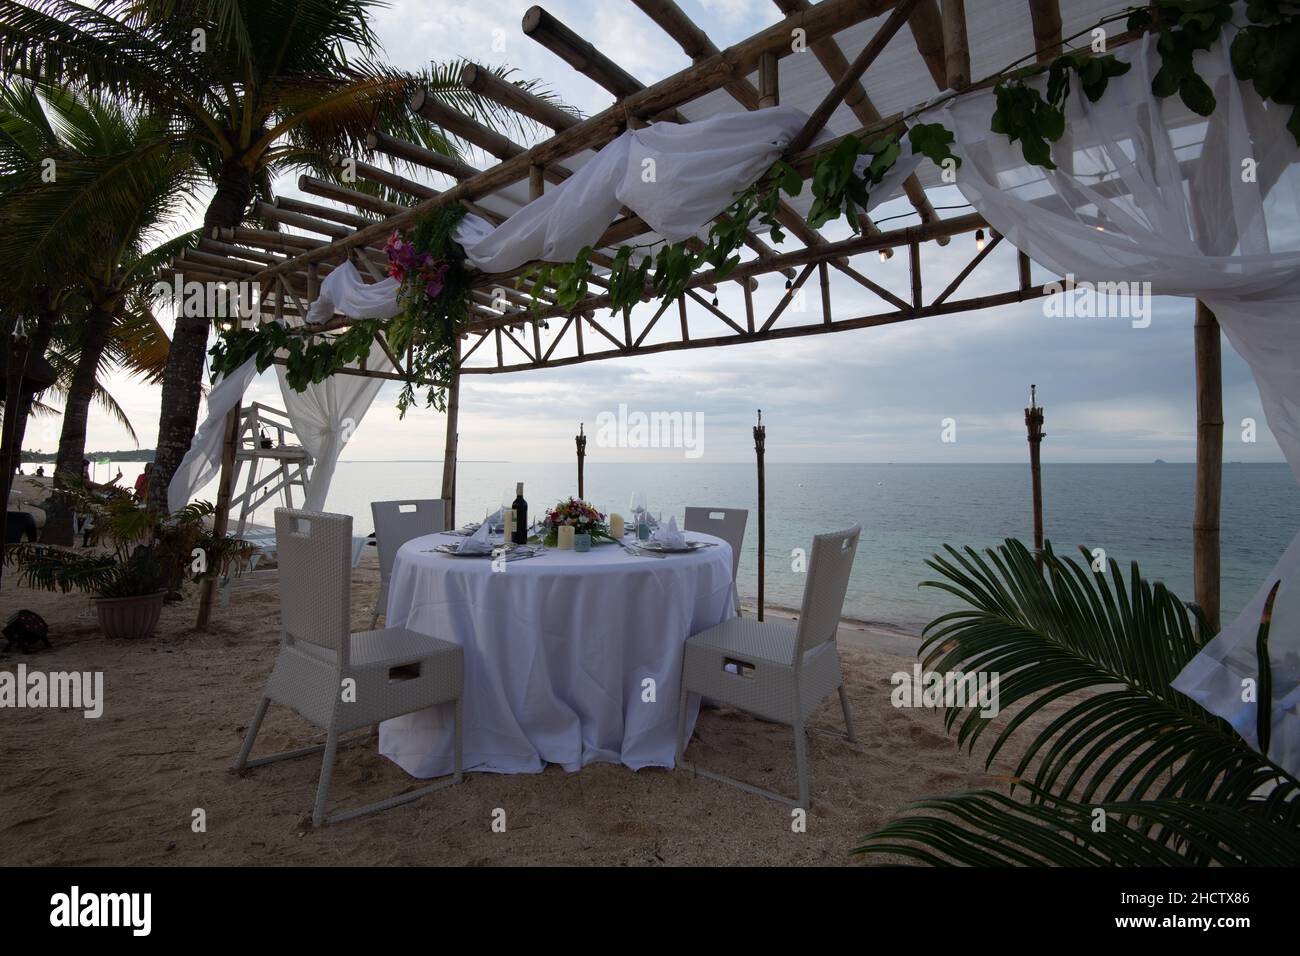 Una vista sul mare e un baldacchino in legno con un tavolo da pranzo splendidamente decorato Foto Stock